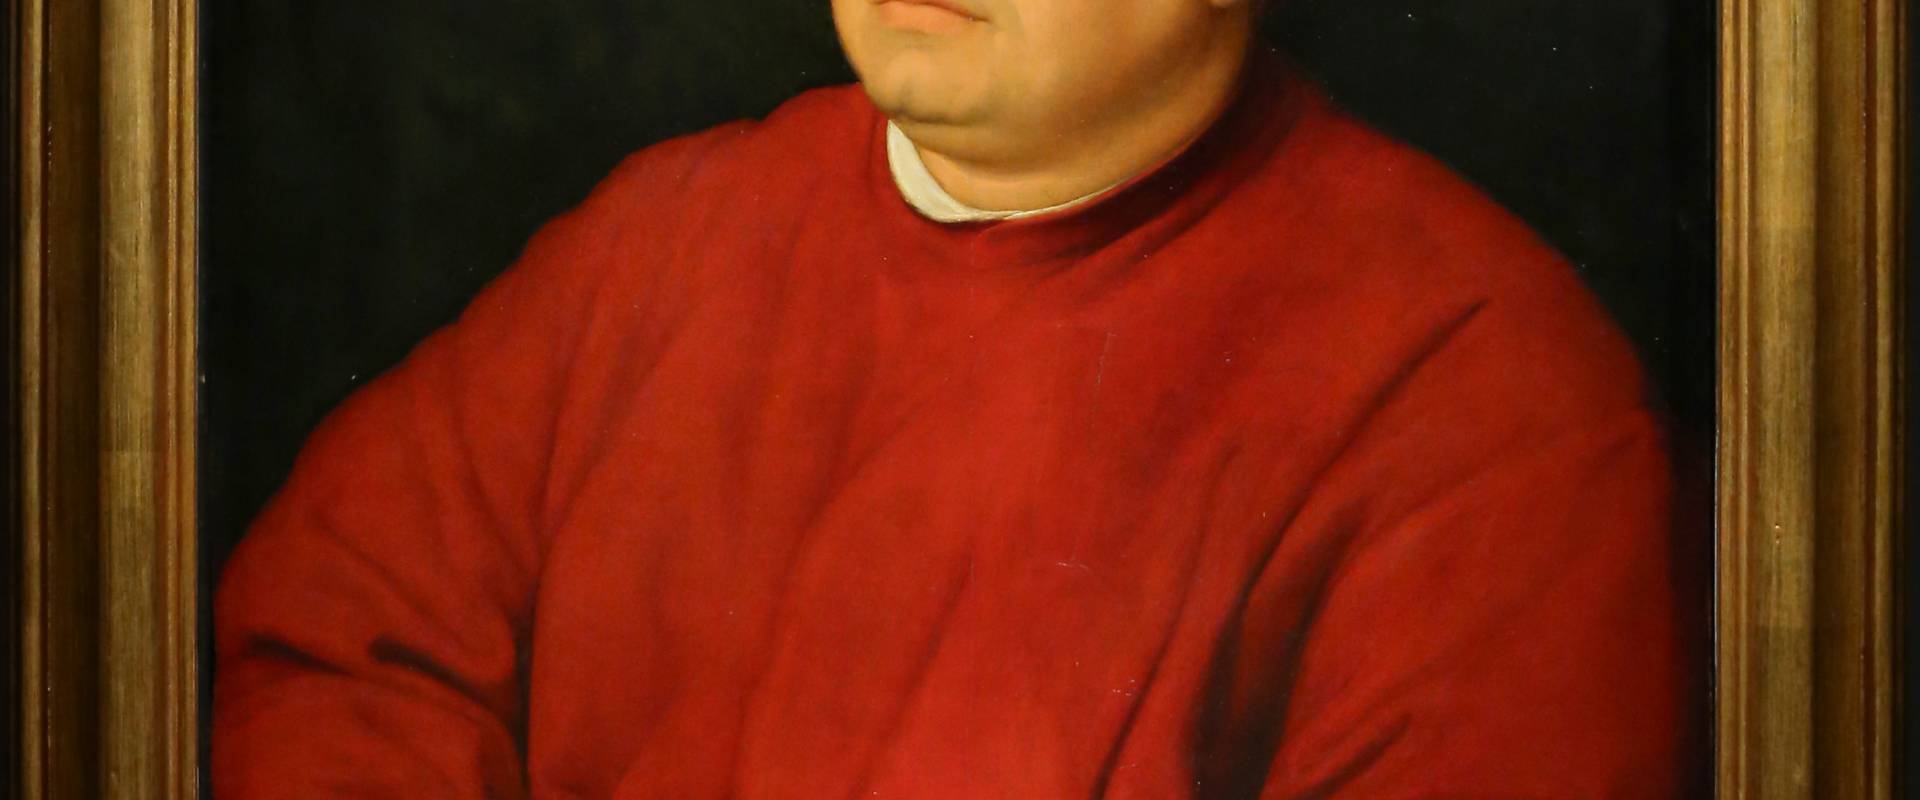 Raffaello, ritratto di tommaso inghirami detto fedra, 1510 ca. (fi, palatina) 01 foto di Sailko